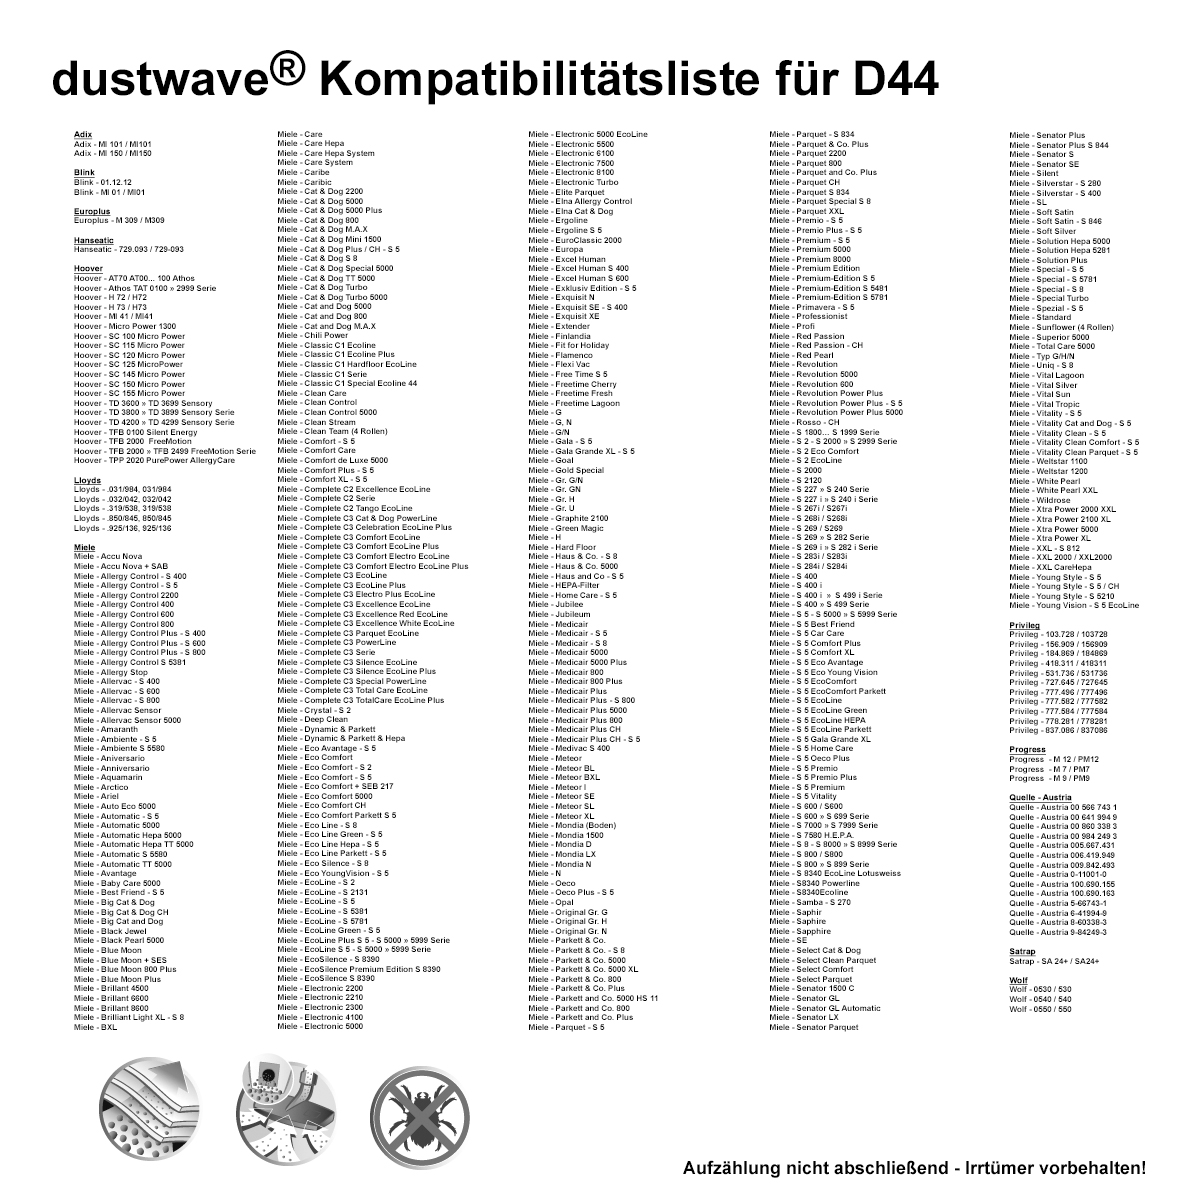 Dustwave® 10 Staubsaugerbeutel für Hoover AT18LI/1047 - hocheffizient, mehrlagiges Mikrovlies mit Hygieneverschluss - Made in Germany